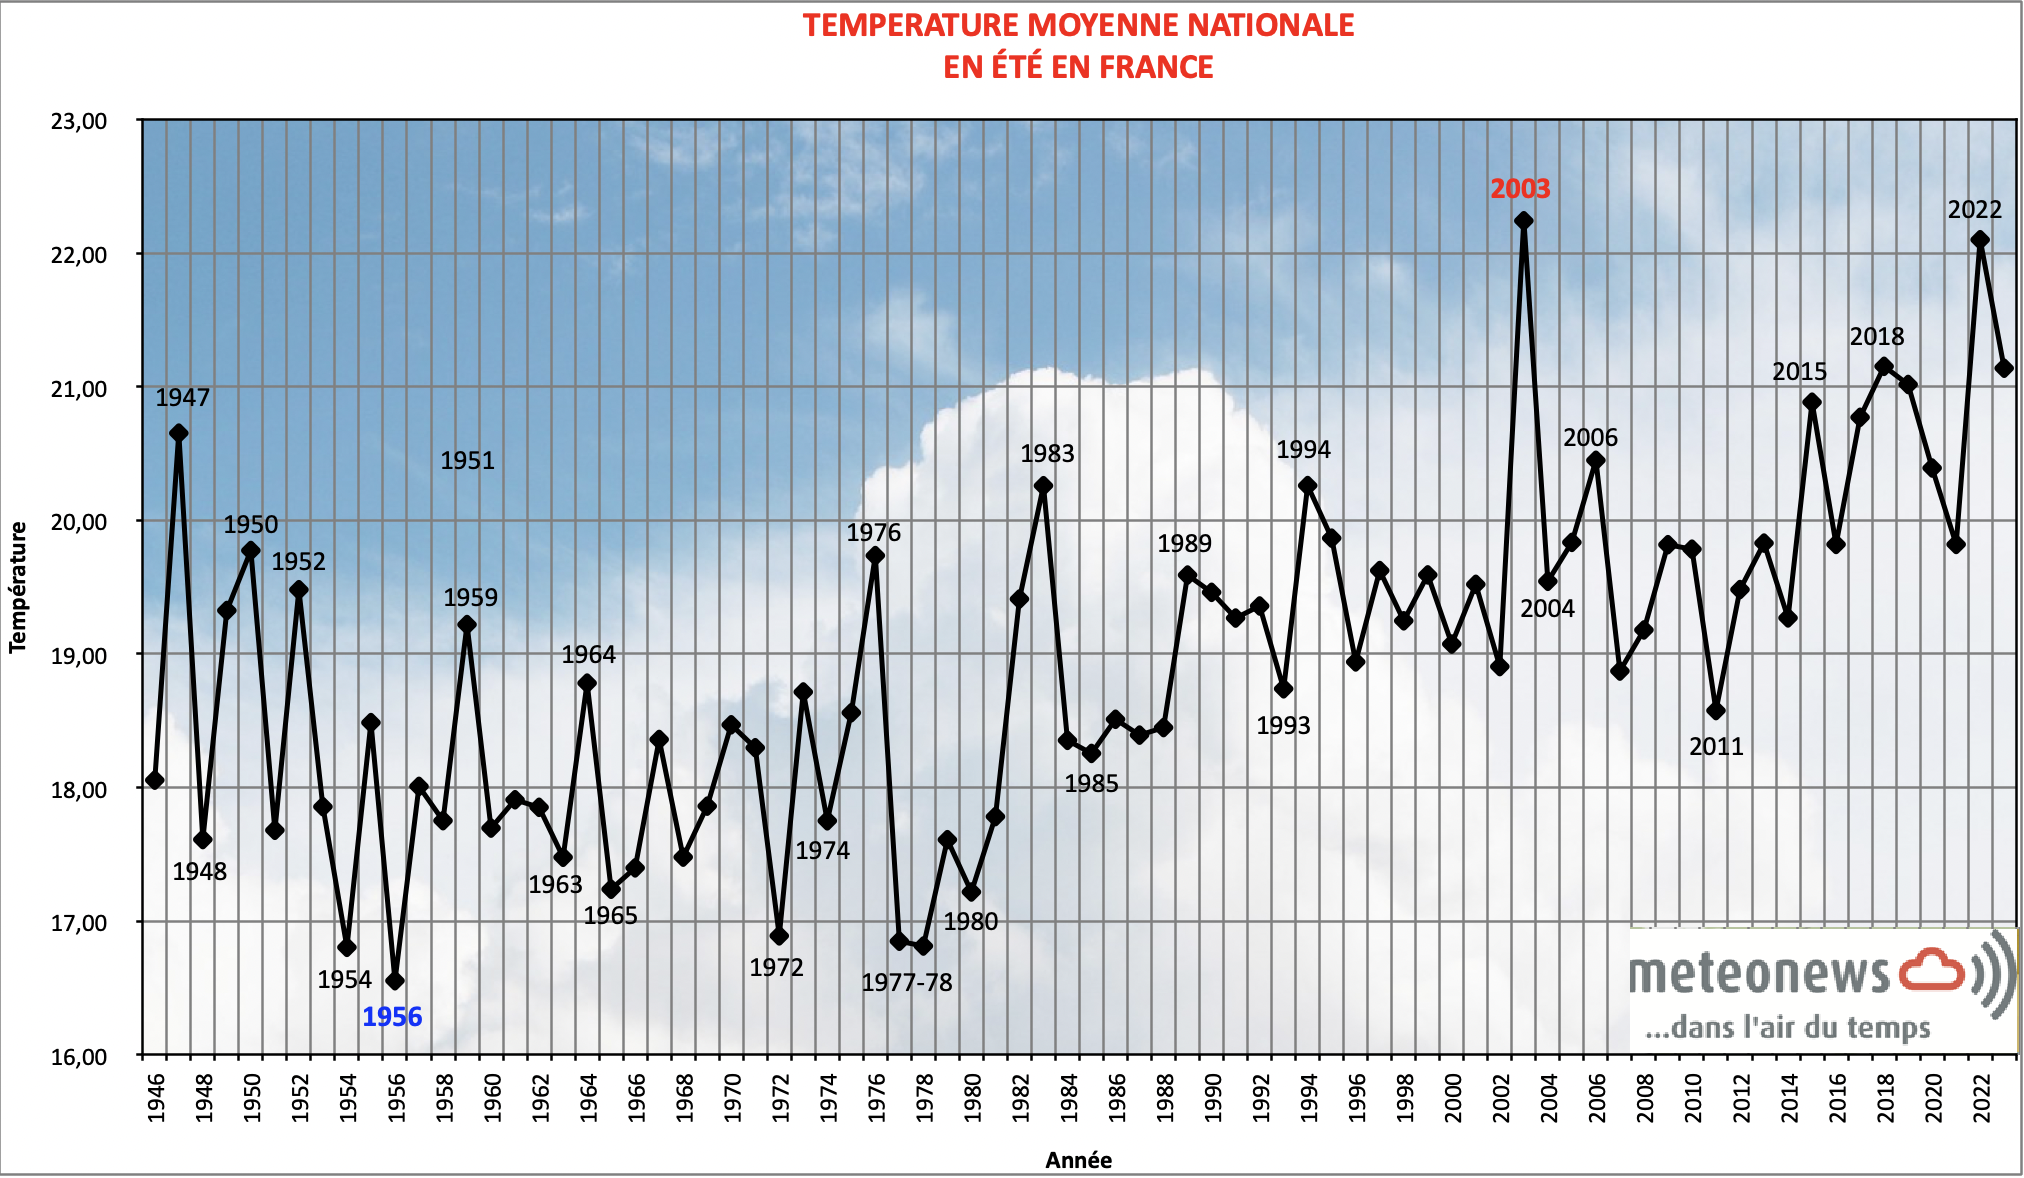 Température moyenne nationale en été en France; Source: MeteoNews